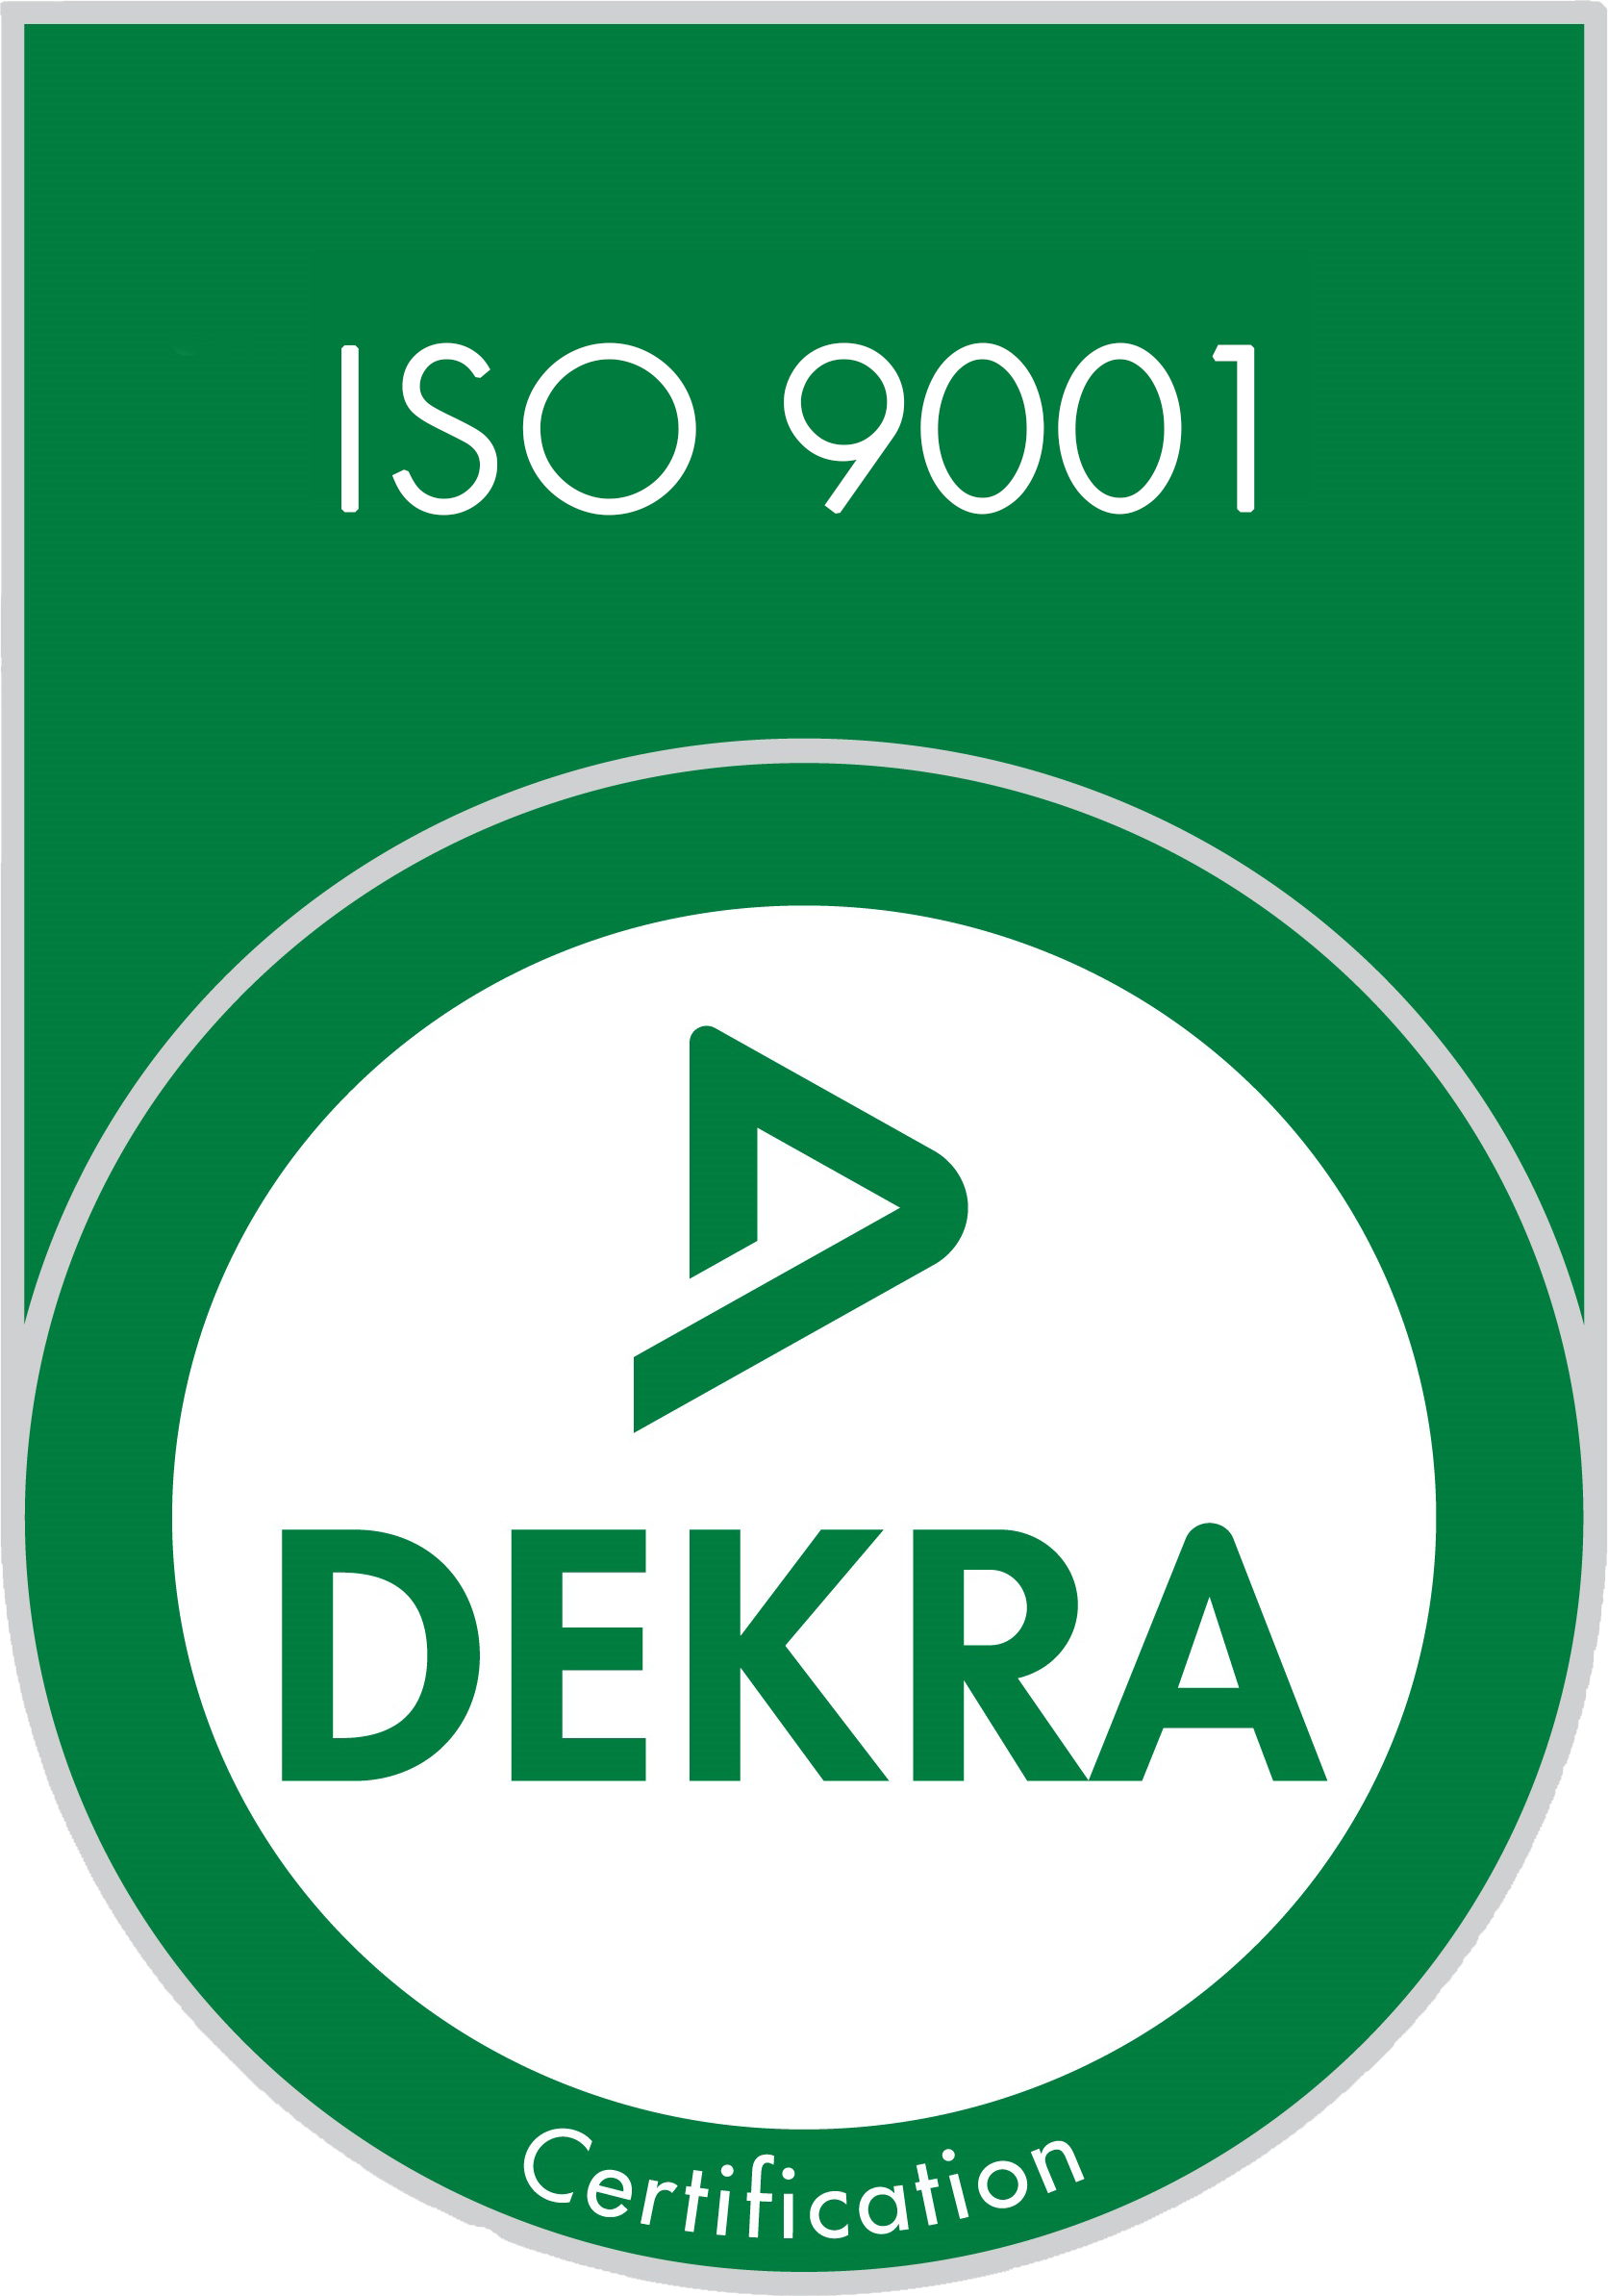 IFS 9001 DEKRA